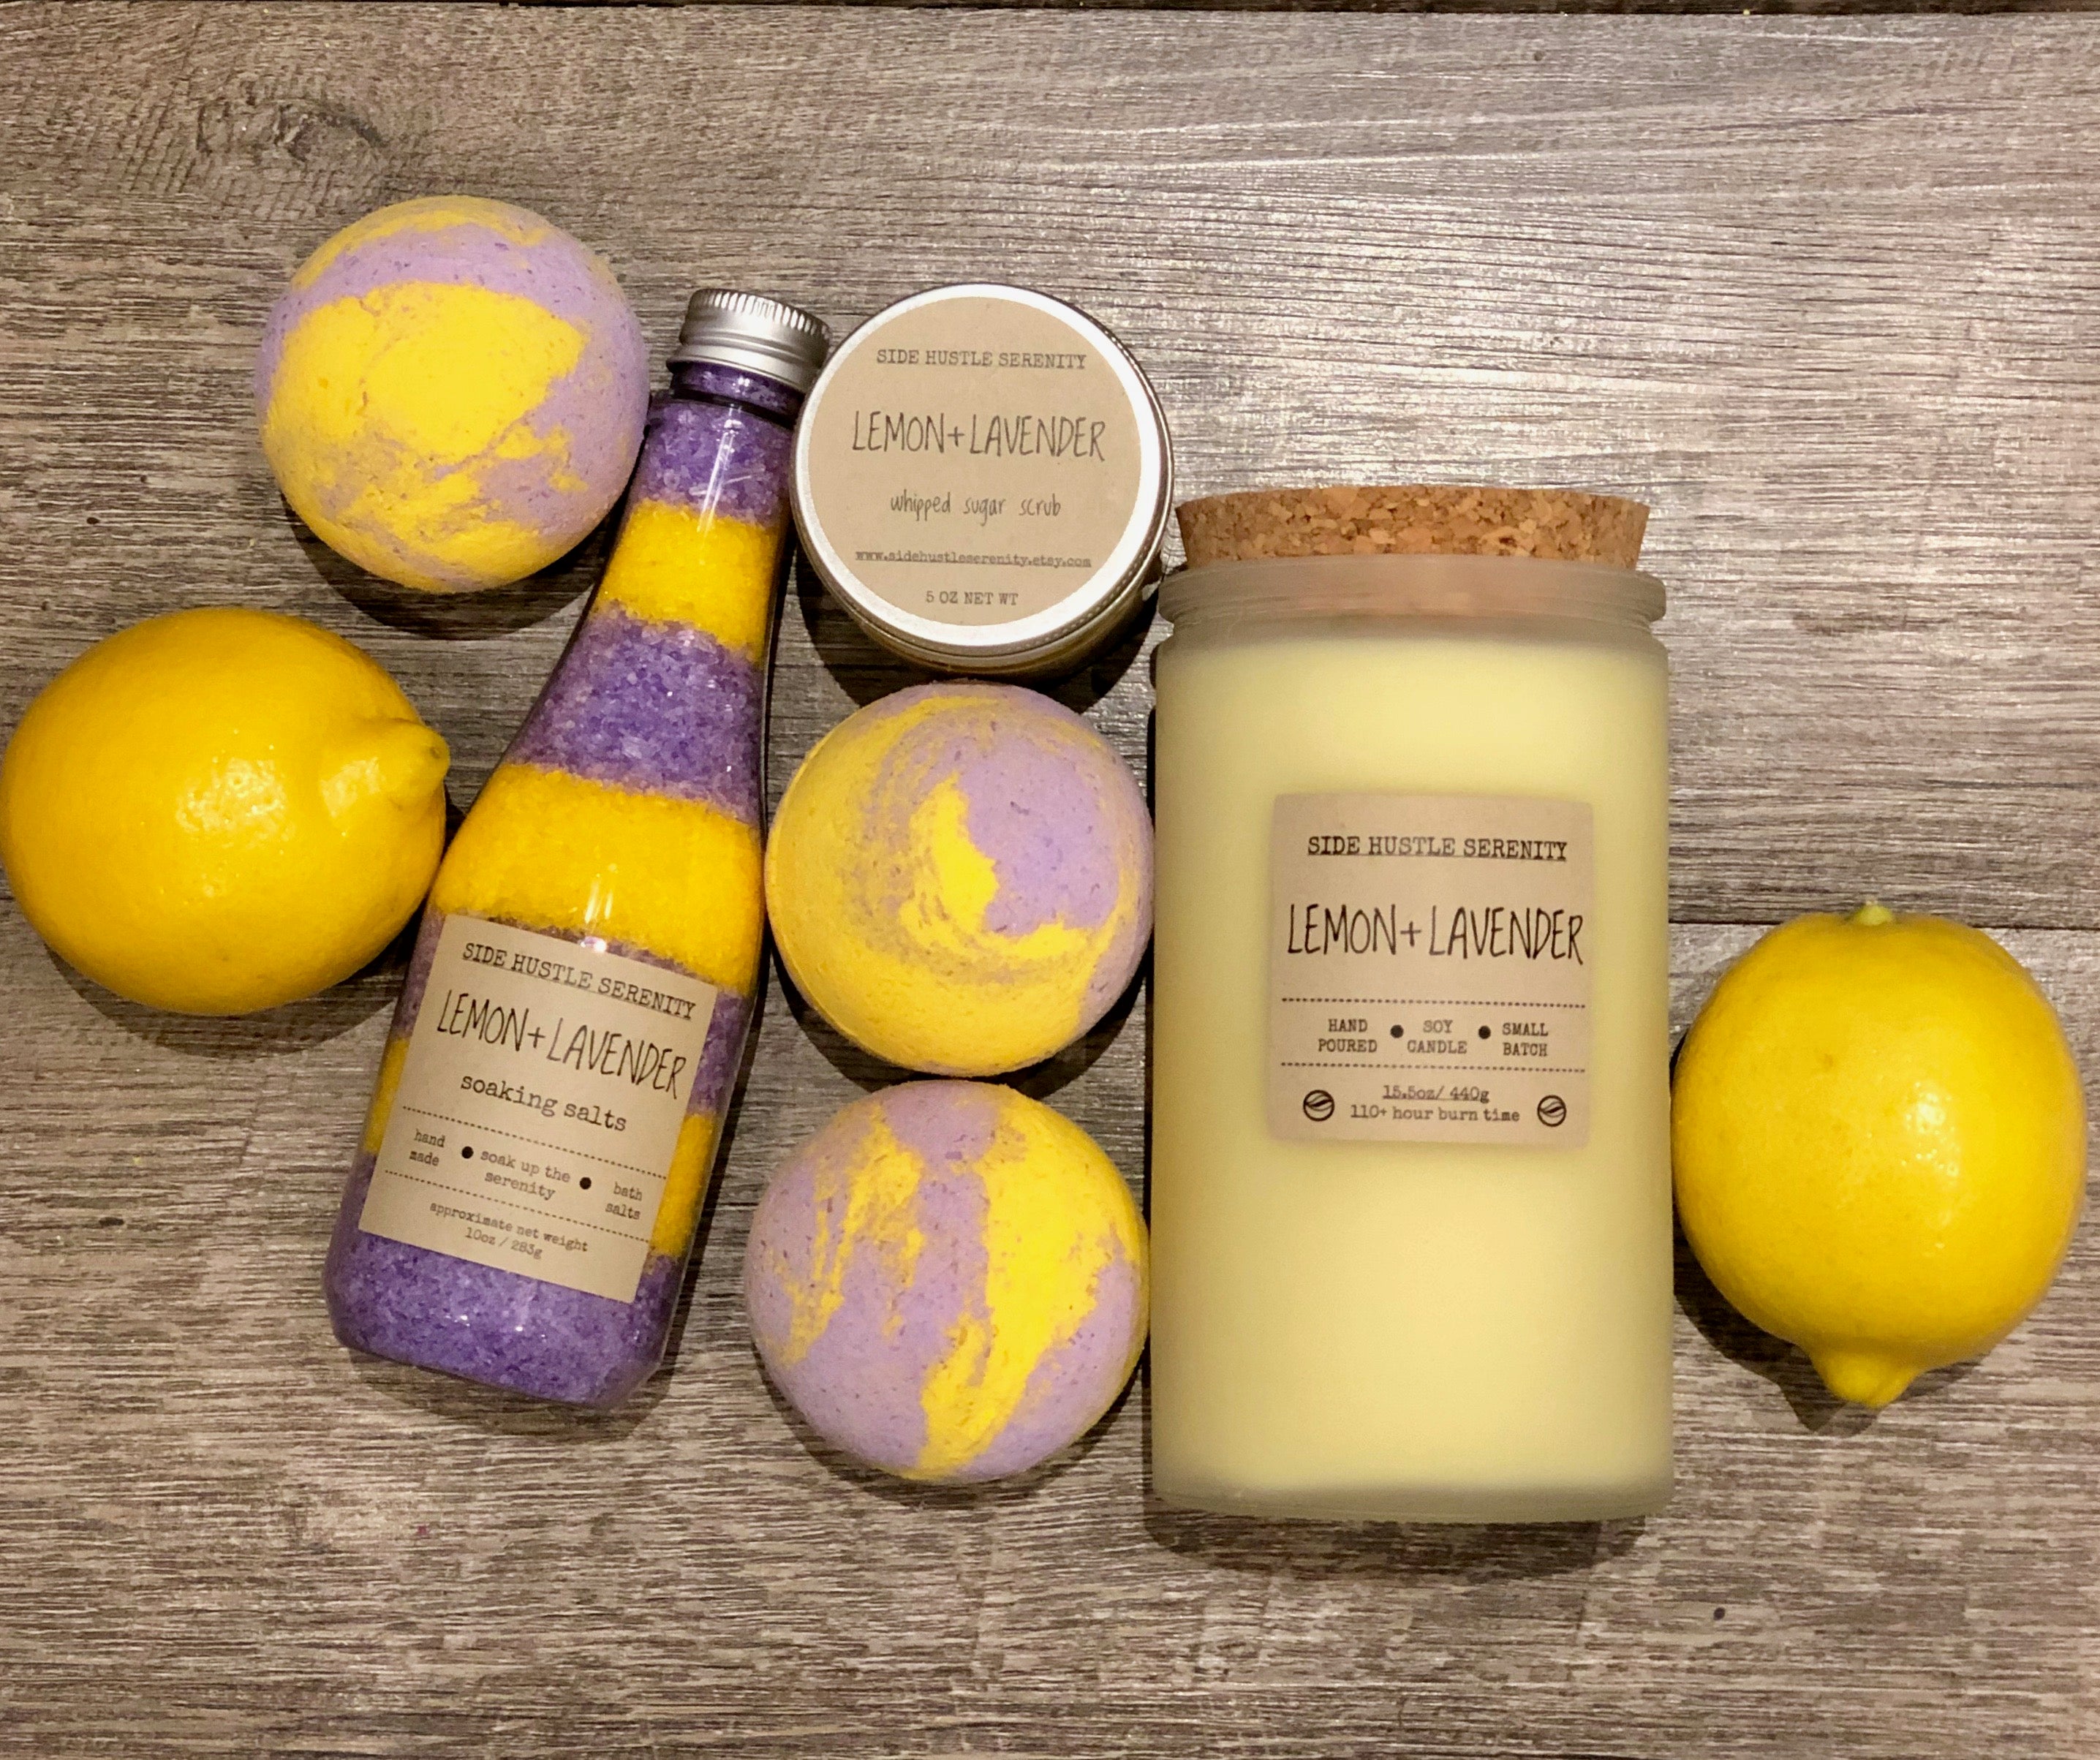 Lemon + Lavender Scented Soy Candle - Side Hustle Serenity